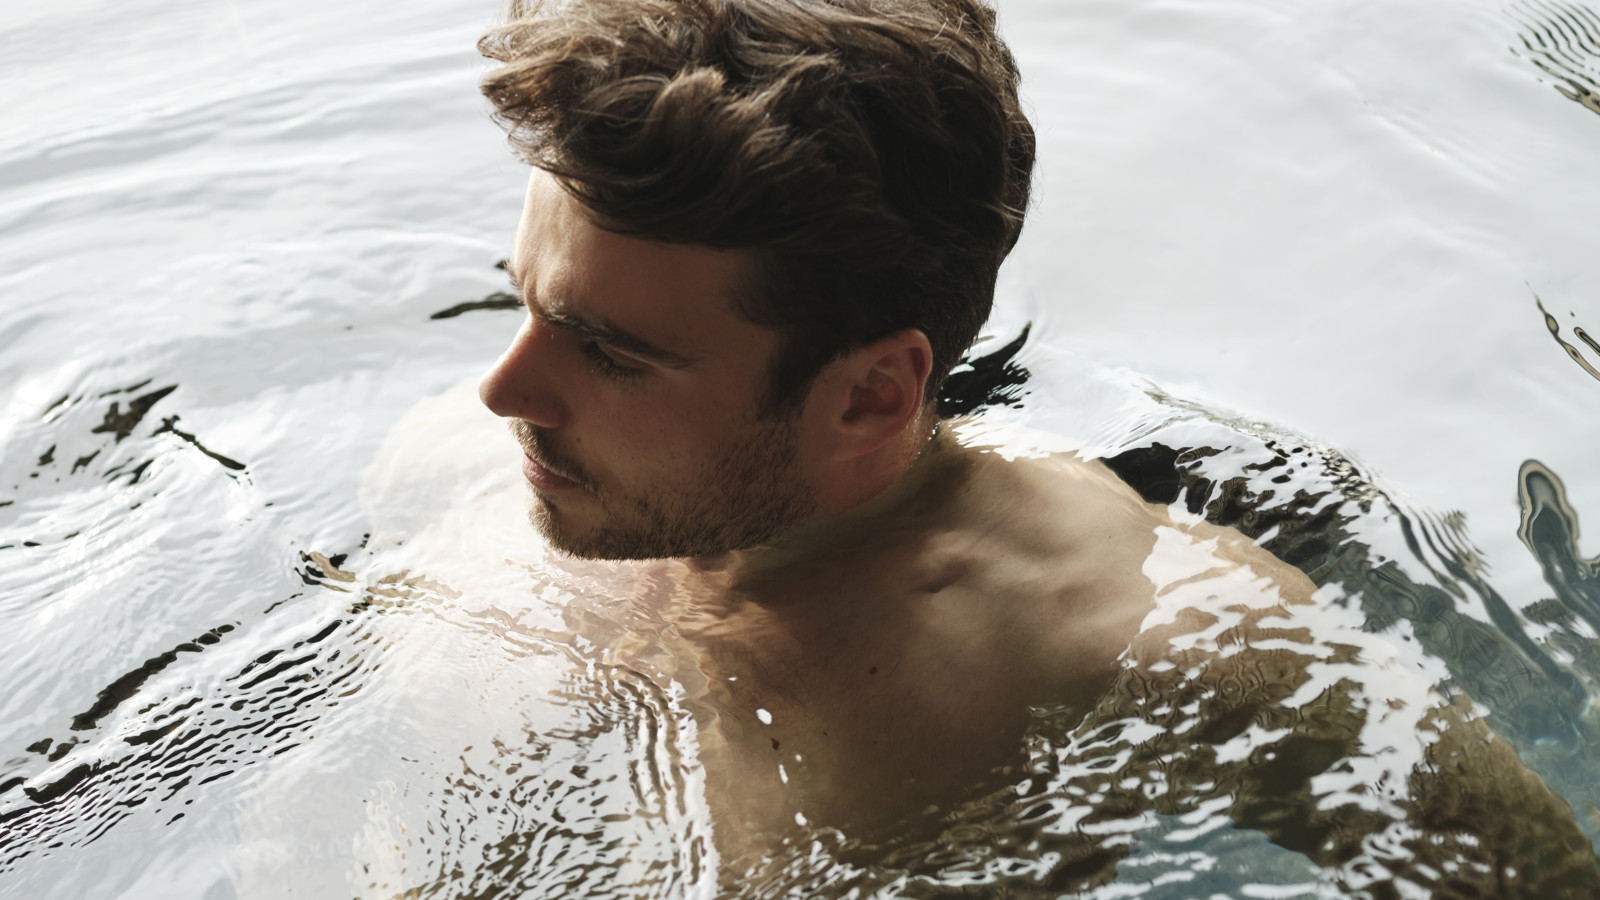 A man bathing in a pool